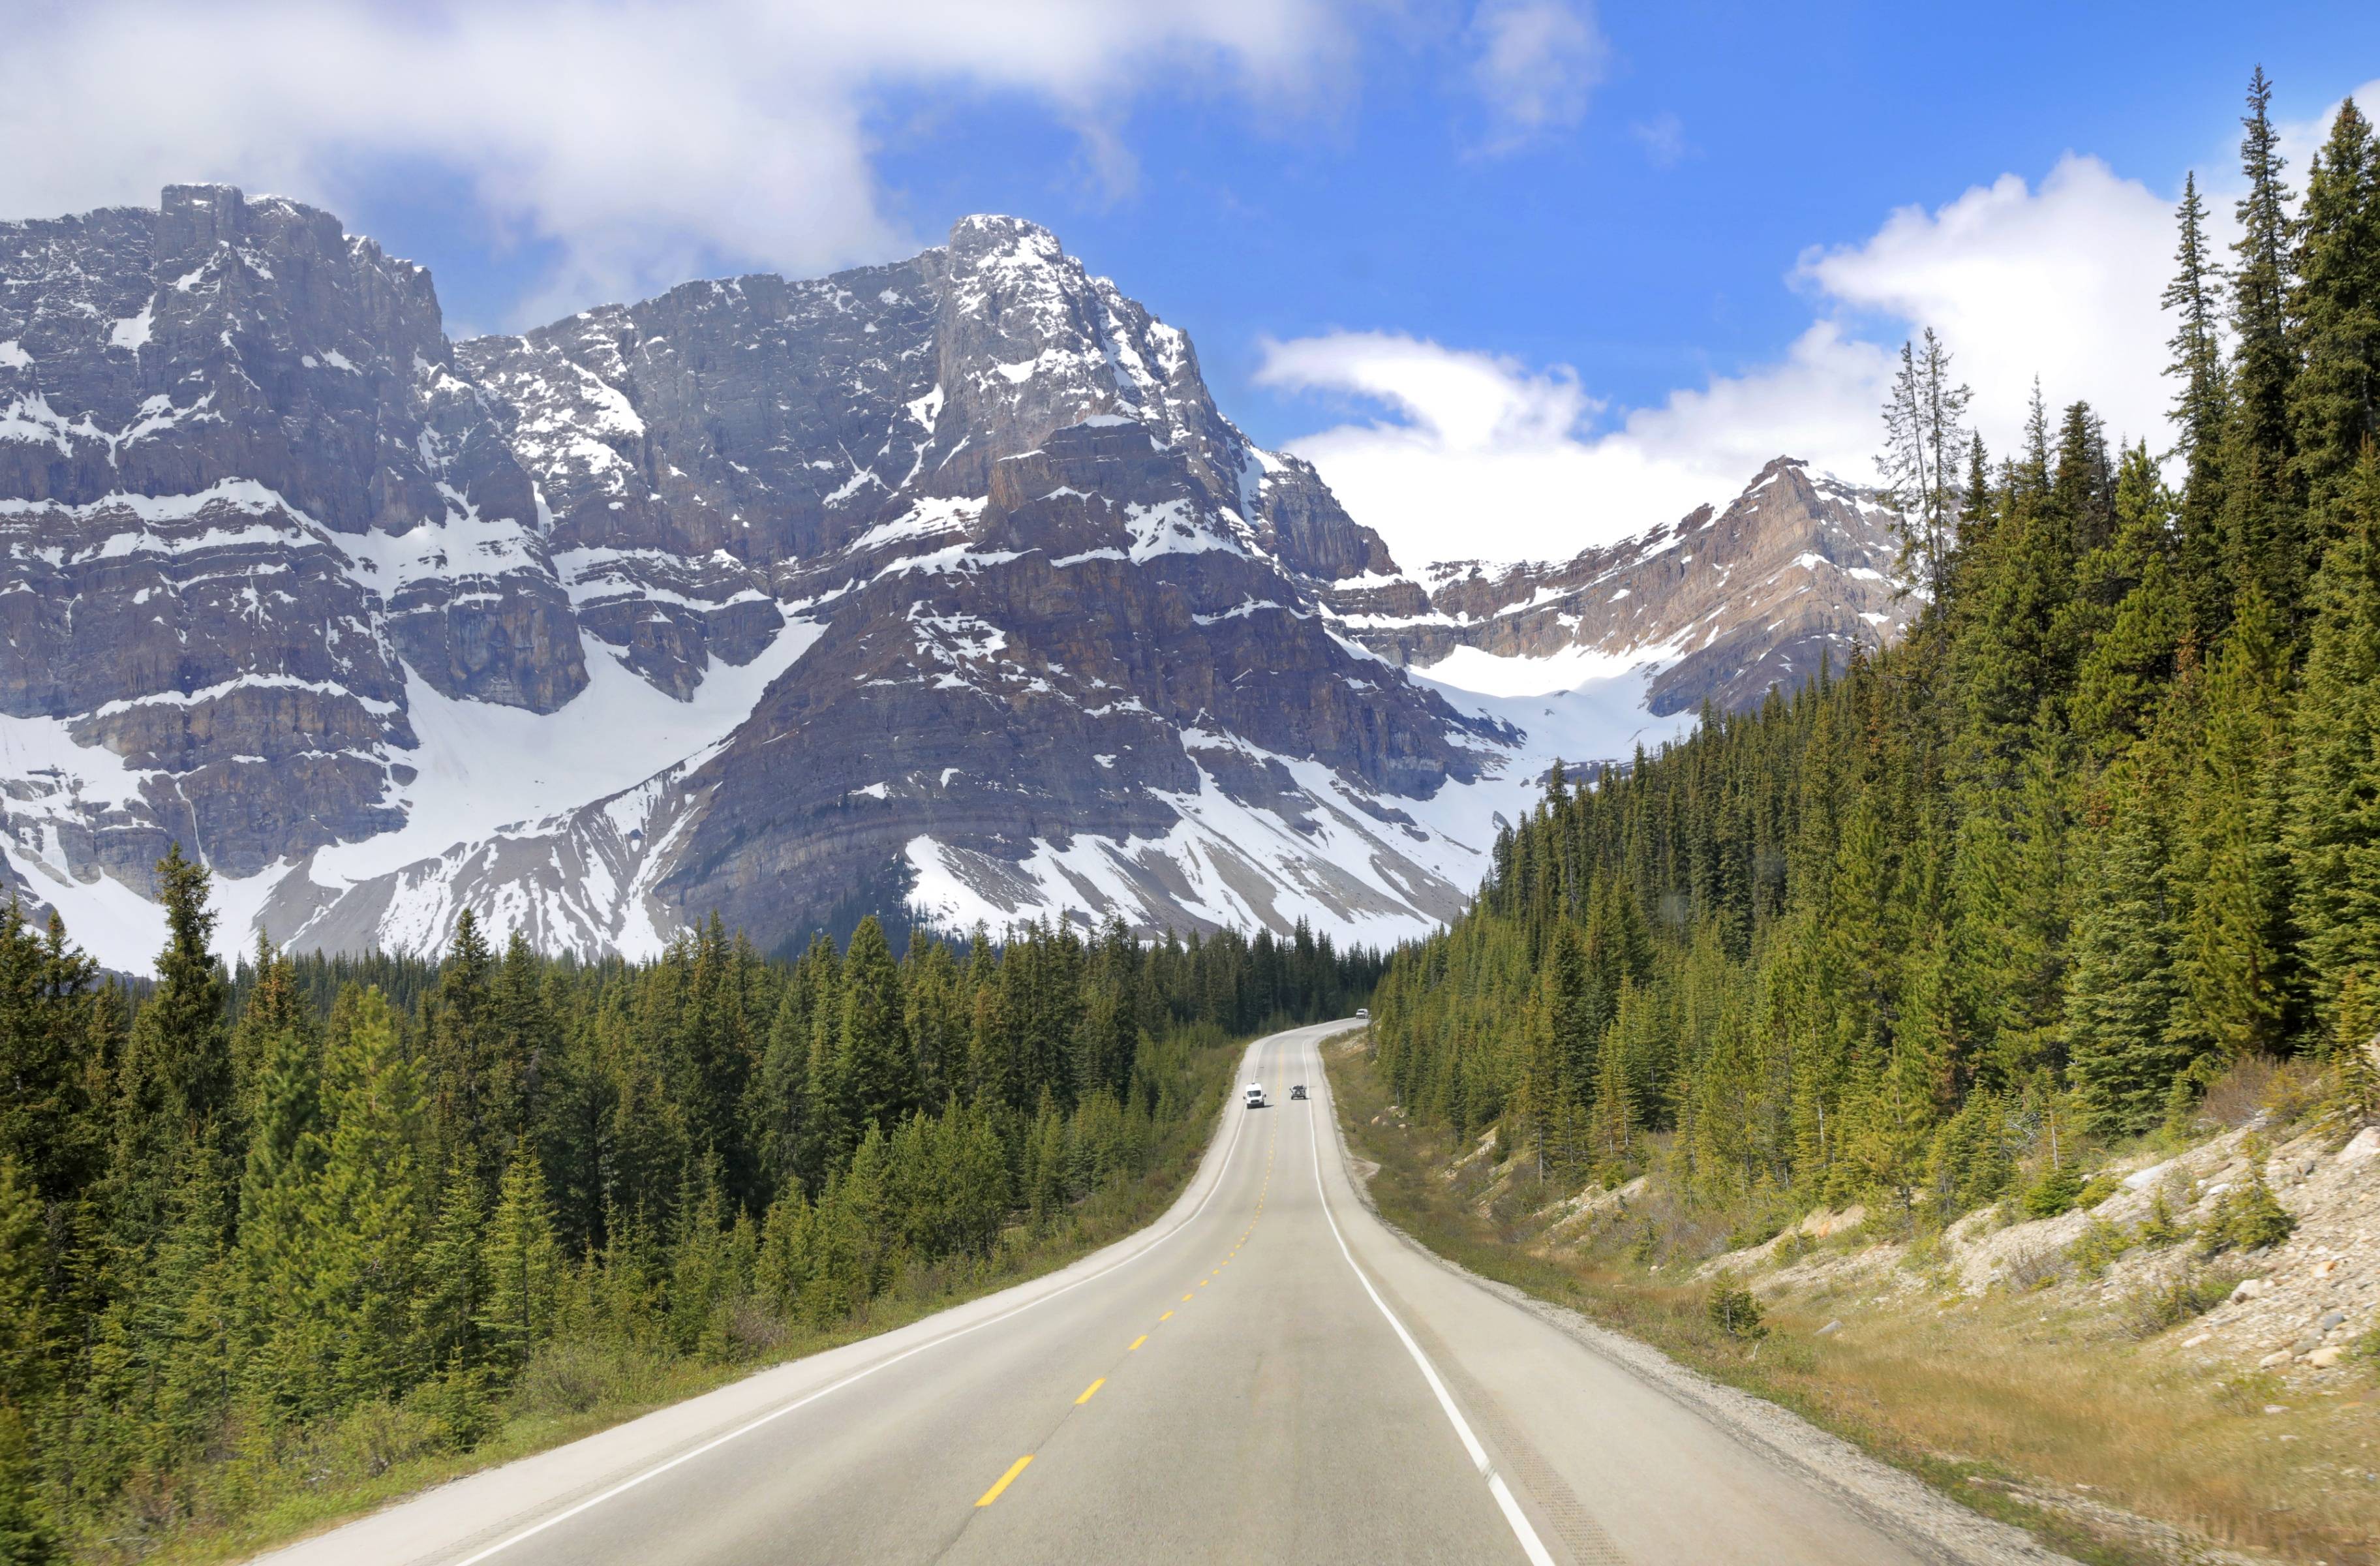 Travesía escénica por la Icefields Parkway: descubre Jasper desde Banff a Blue River o Valemount